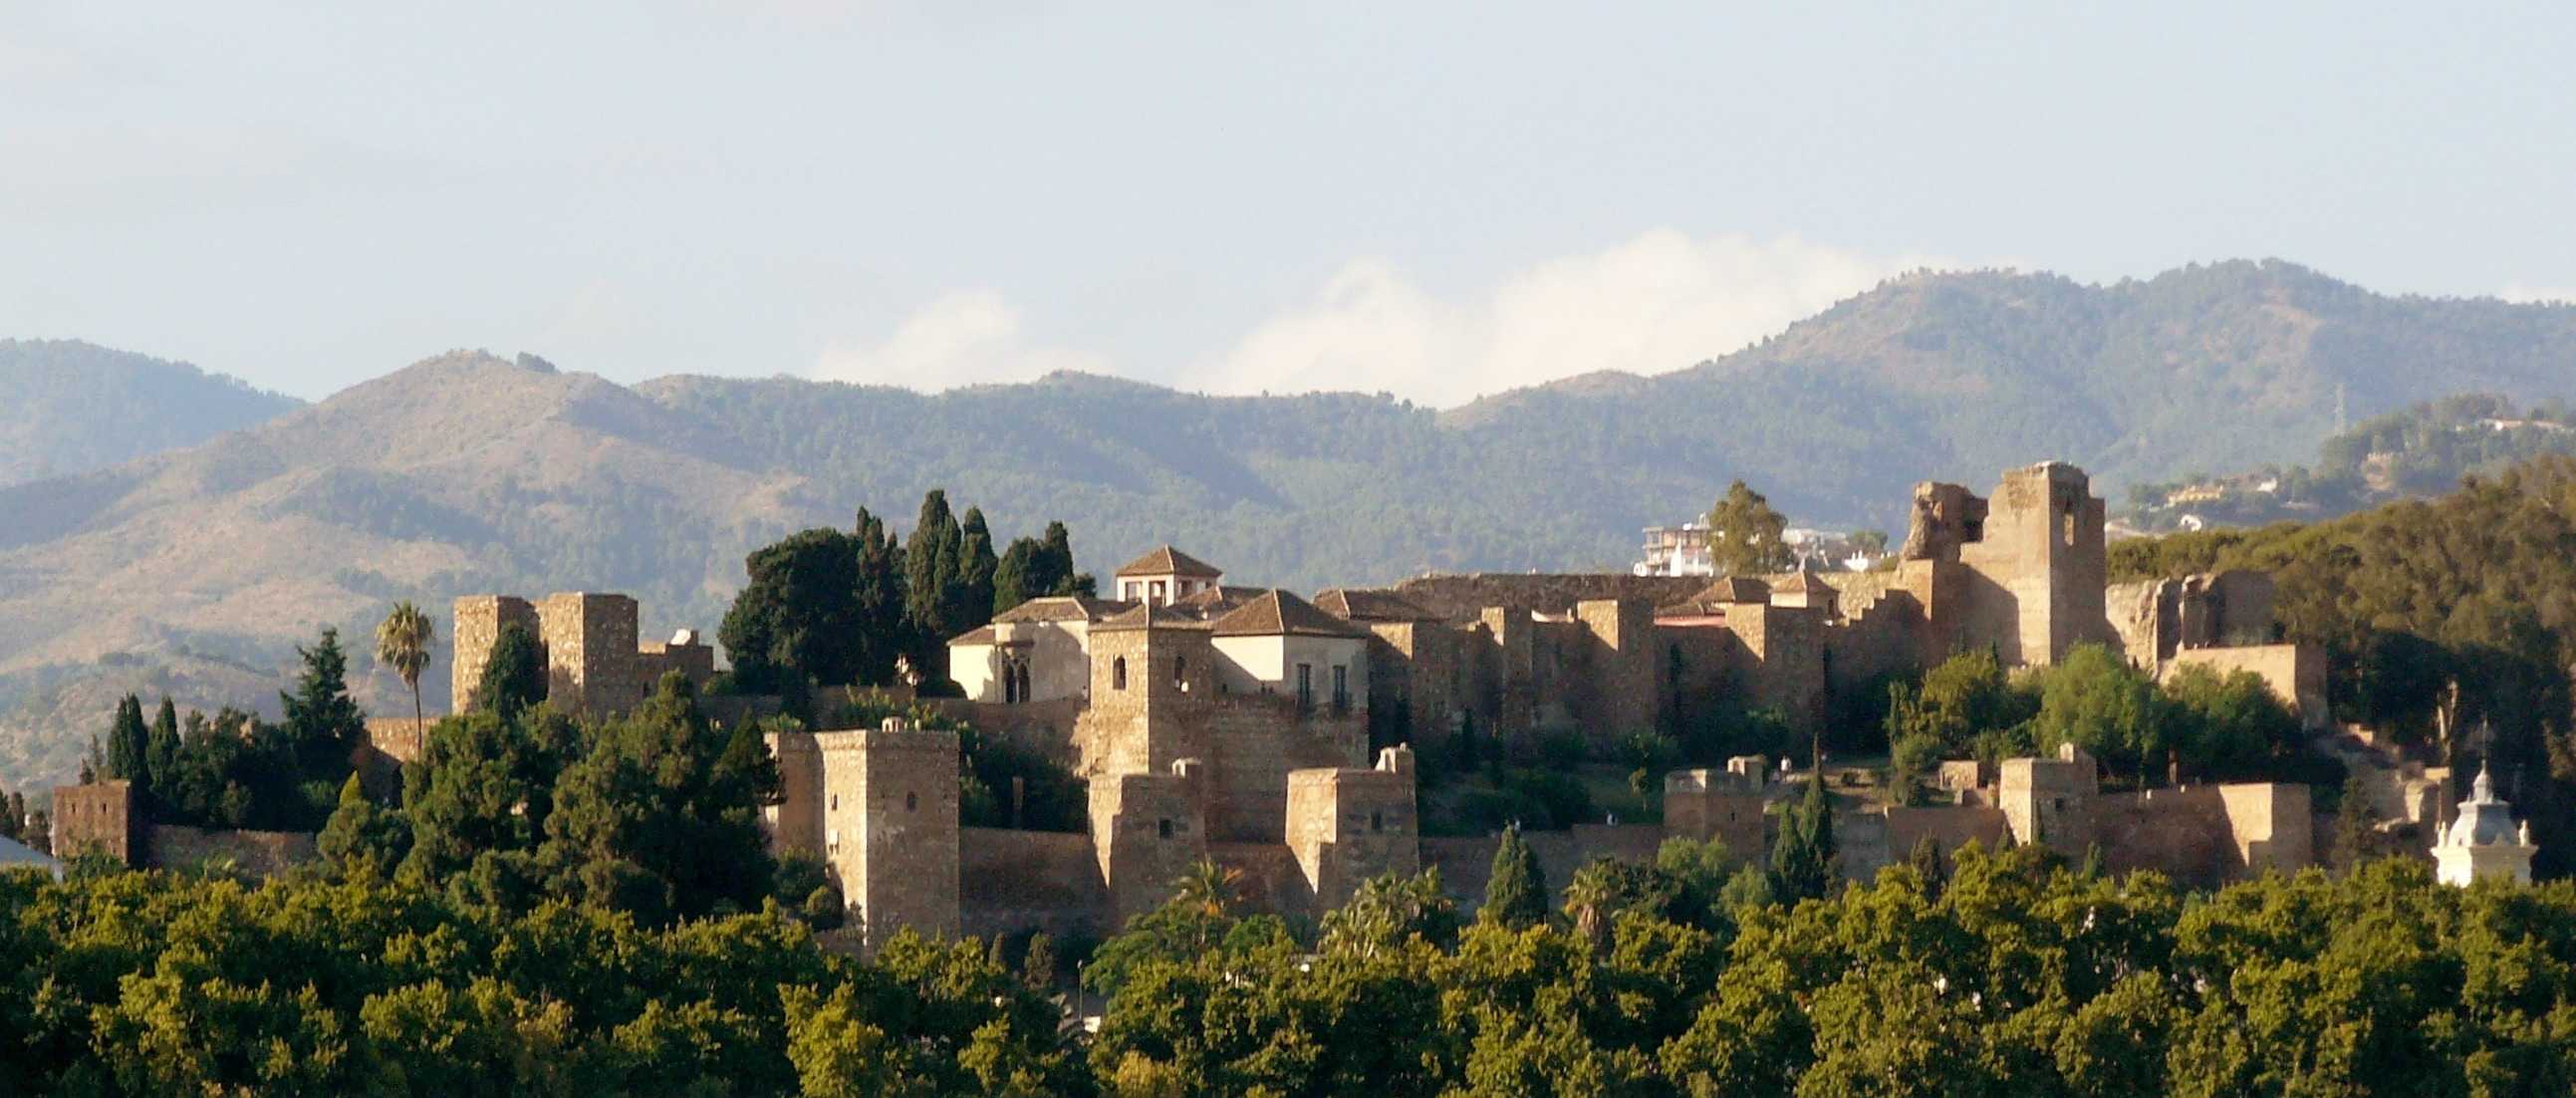 La alcazaba de Málaga